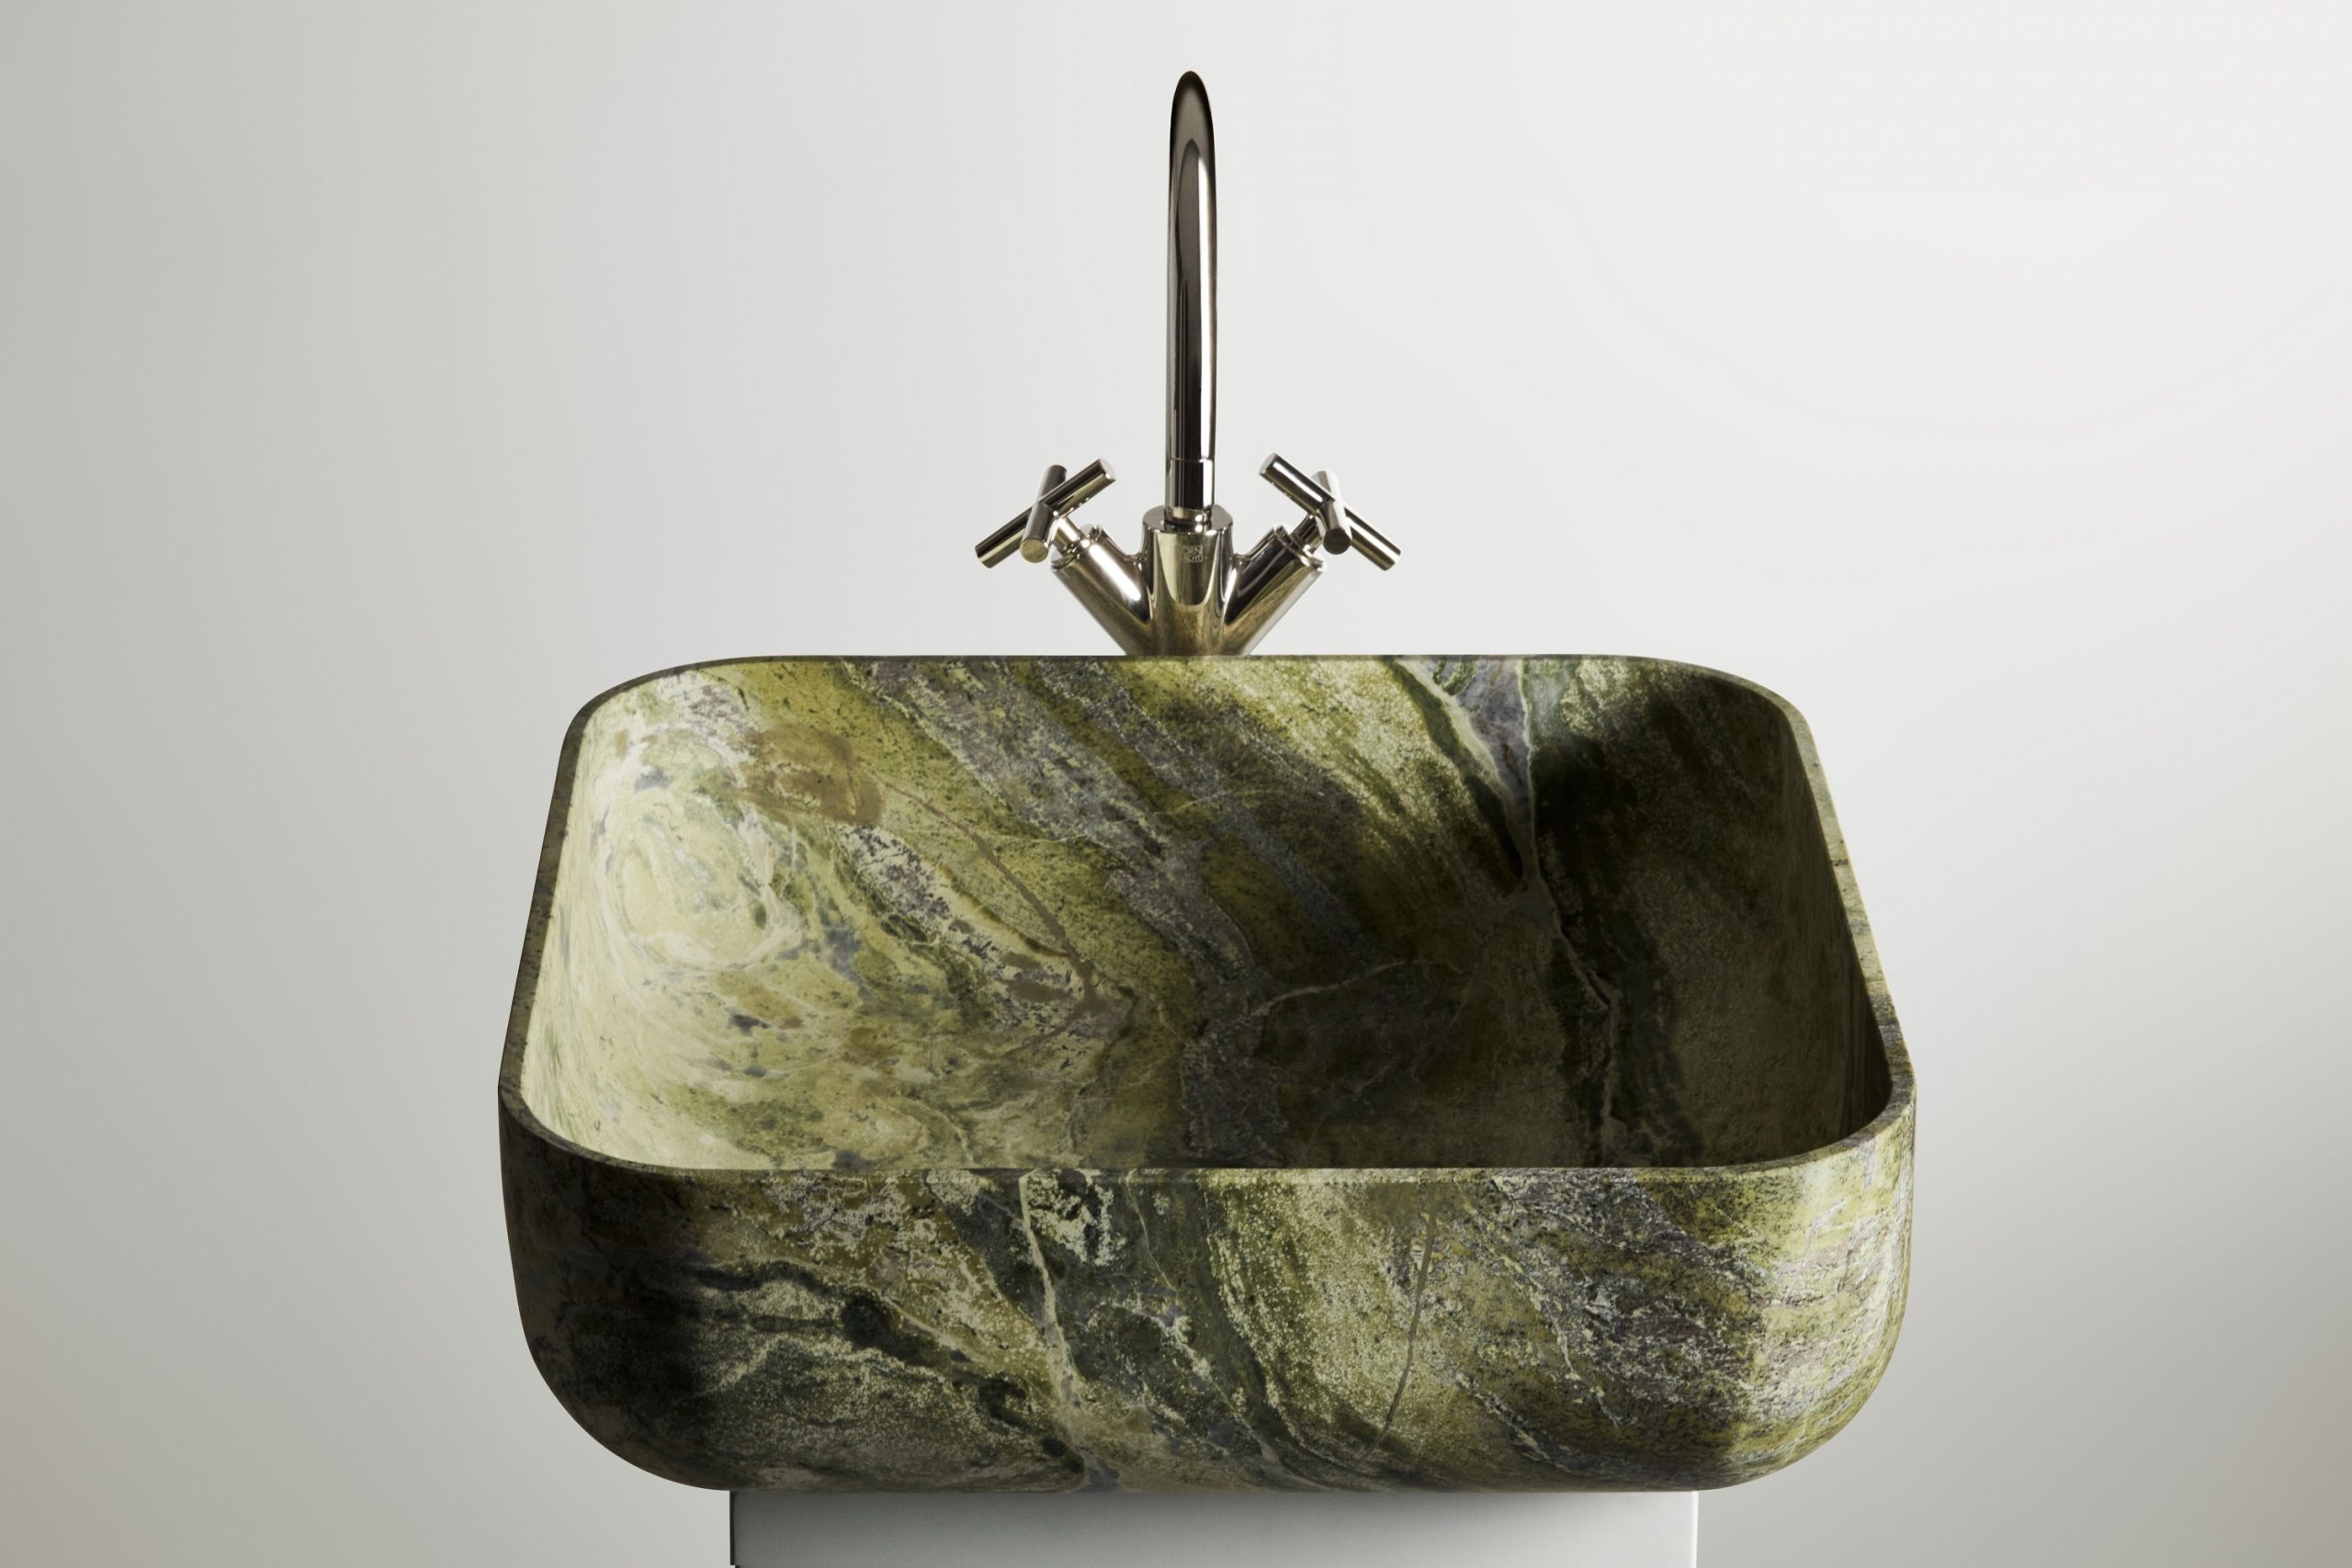 Kreoo ванны и раковины (сантехника) из зеленого мрамор Artik Green